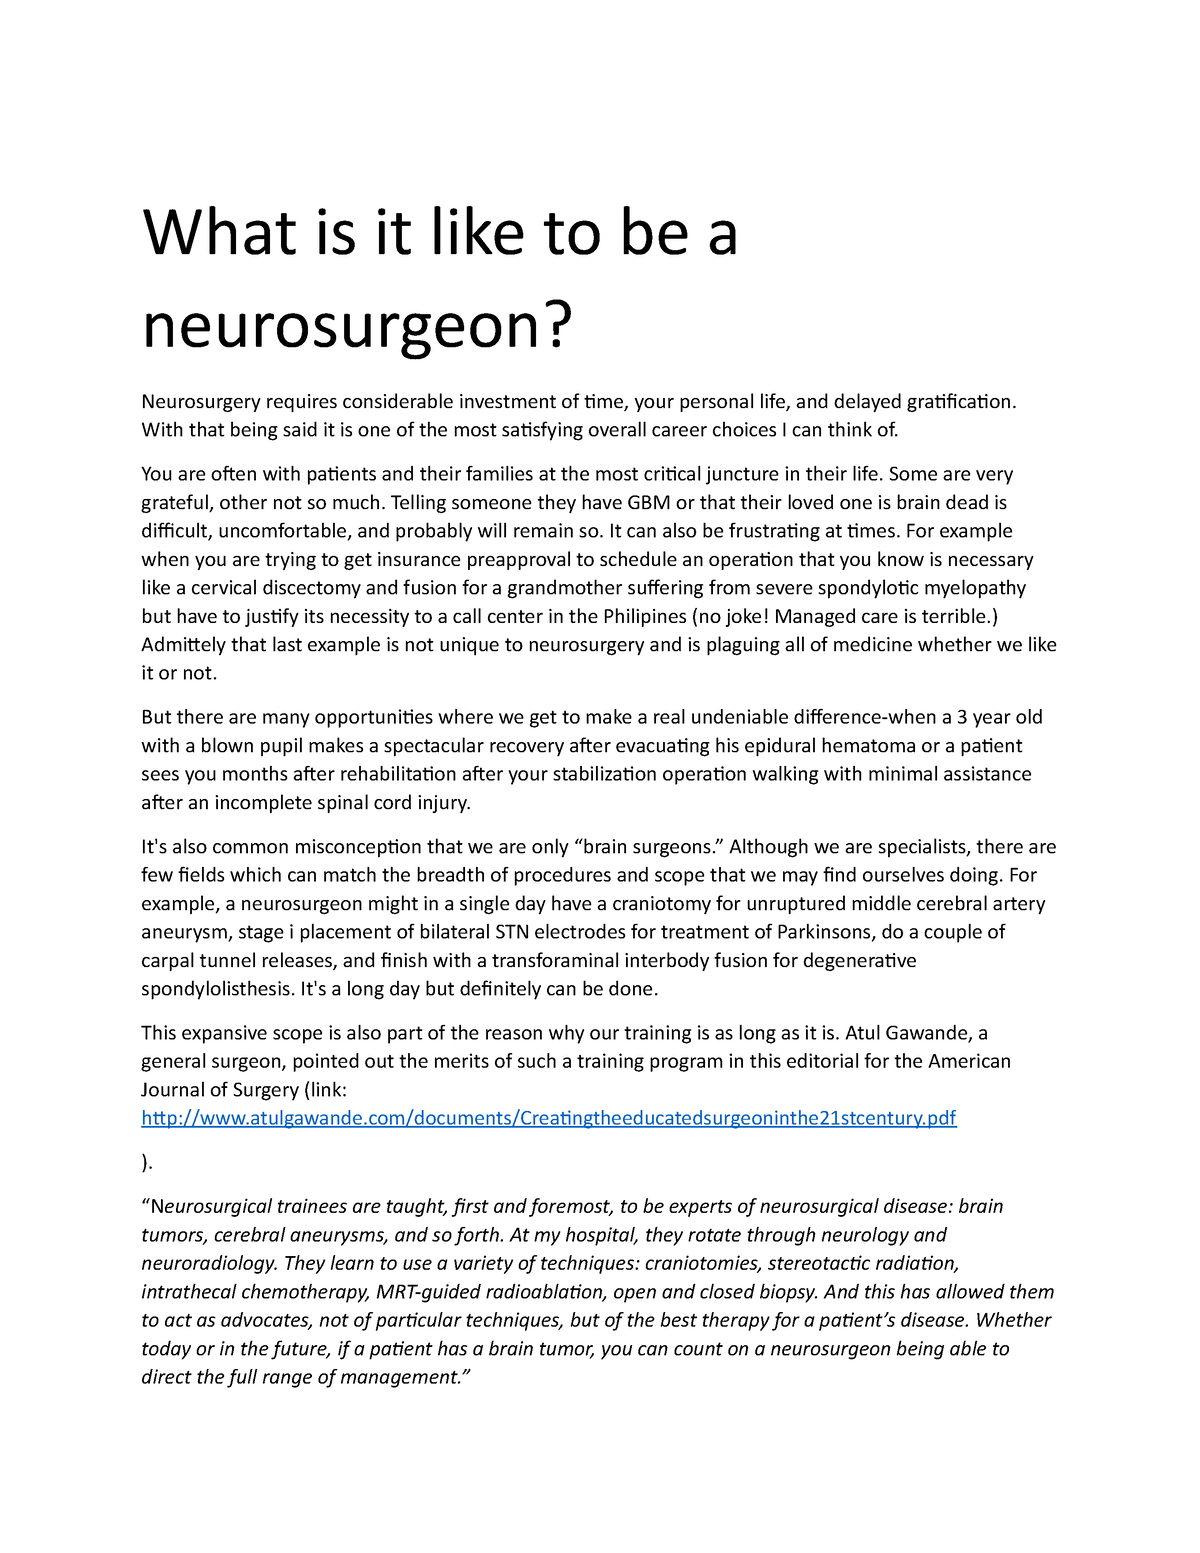 essay on my dream career as a neurosurgeon